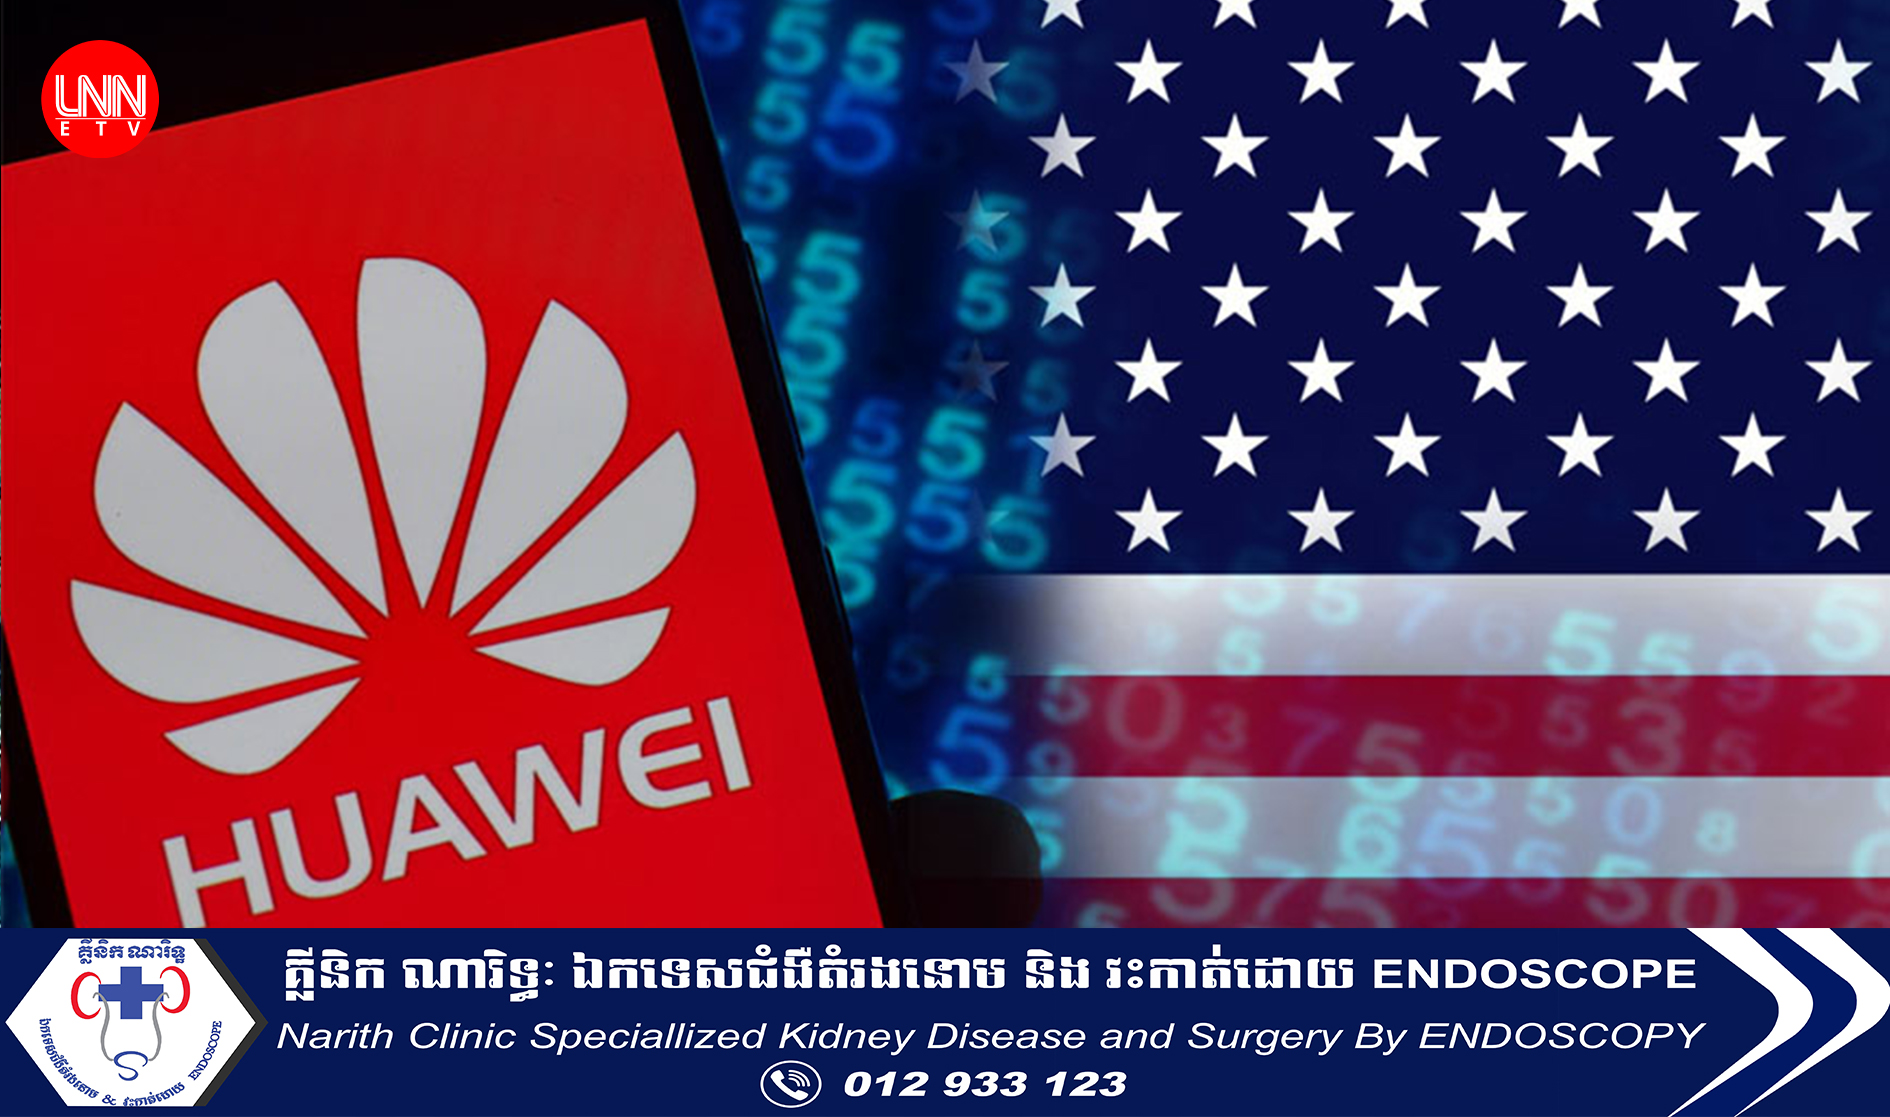 ចិនចោទអាម៉េរិកថា បានលួចចូលក្នុងម៉ាស៊ីនមេរបស់ក្រុមហ៊ុន Huawei ក្នុងបំណងលួចយកទិន្នន័យរបស់ក្រុមហ៊ុន